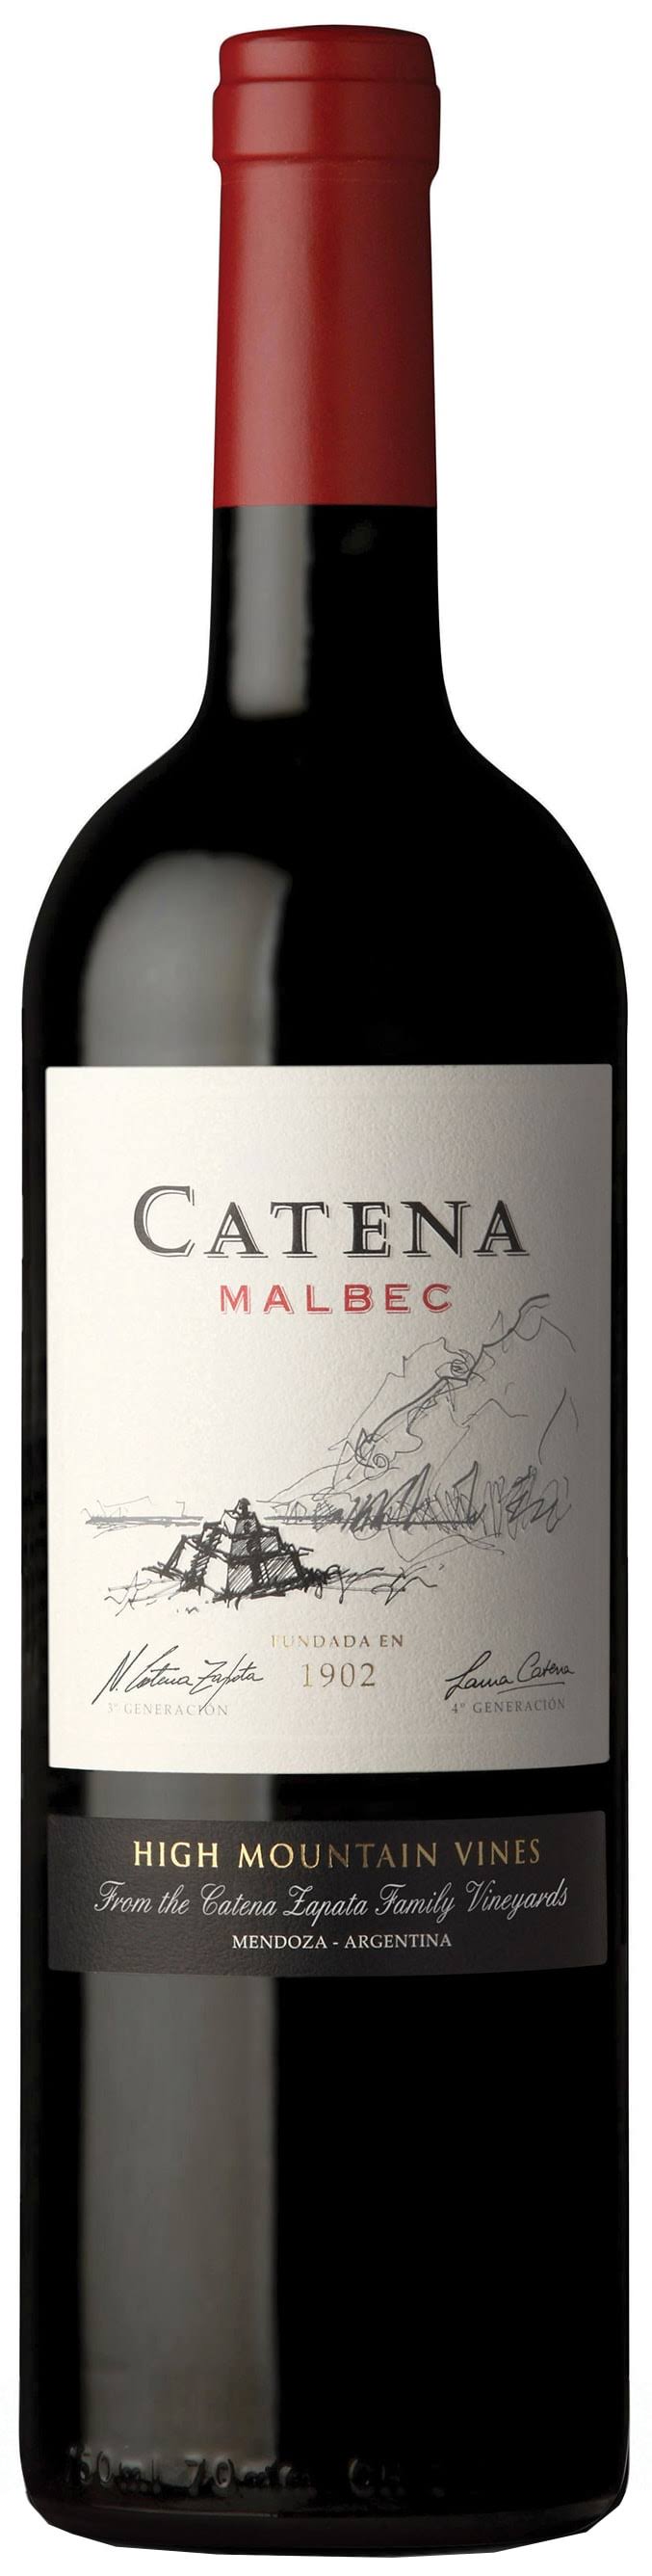 Catena Malbec Mendoza Wine - Argentina